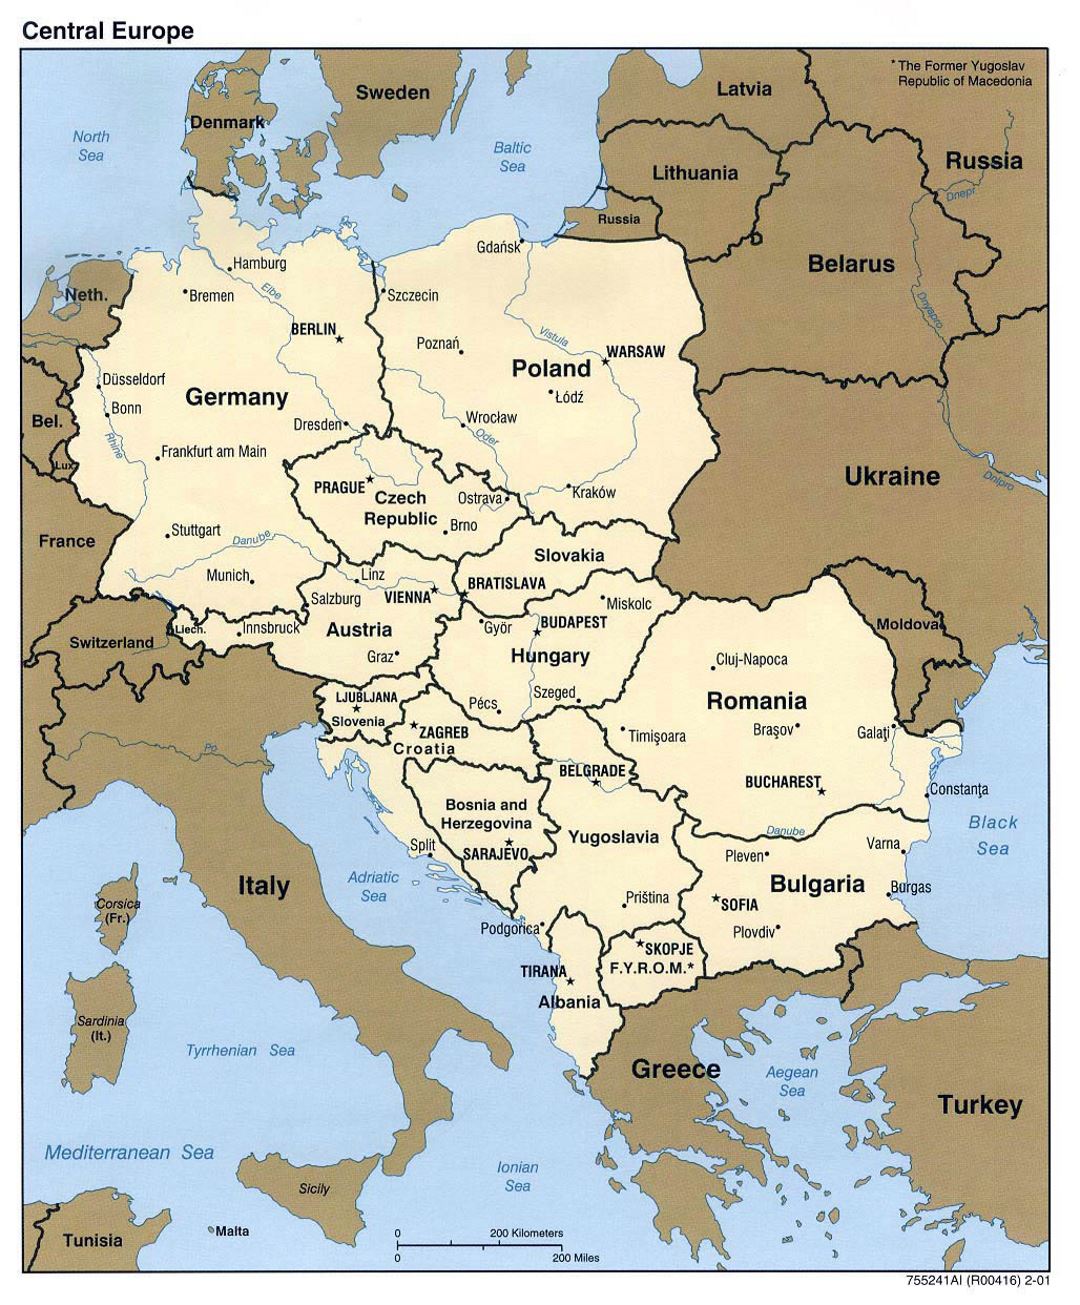 Подробная политическая карта Центральной Европы - 2001